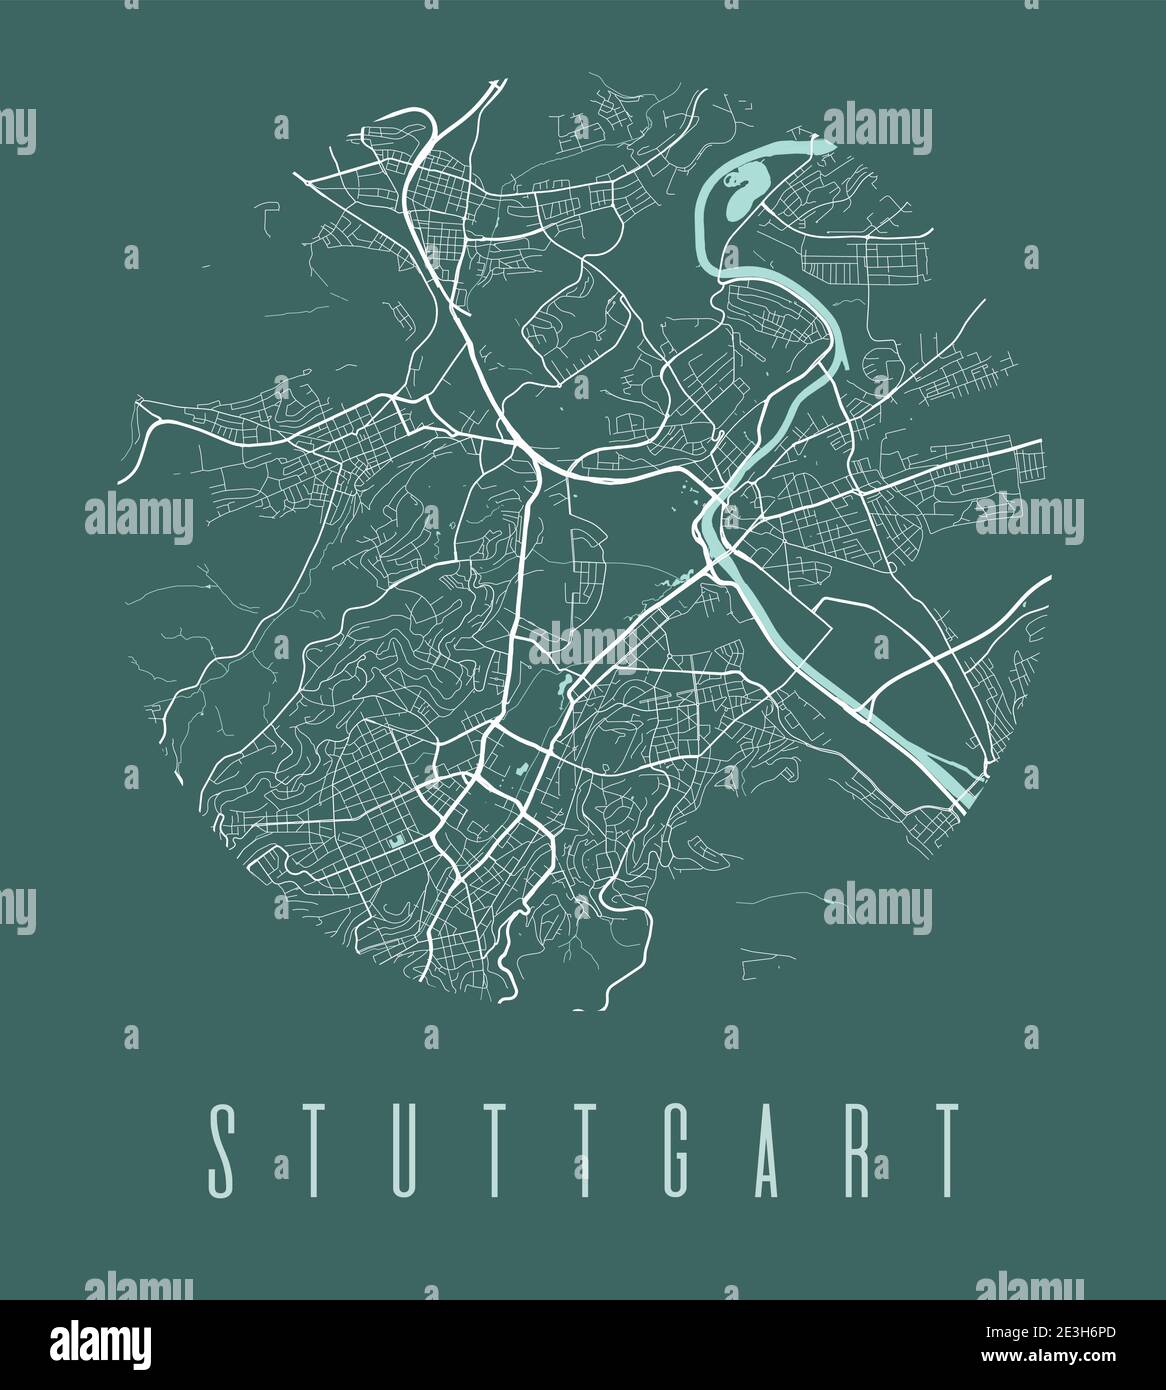 Stuttgart Kartenposter. Dekoratives Design Stadtplan von Stuttgart. Stadtbild ARIA Panorama Silhouette Luftbild, Typografie Stil. Land, Fluss, ein Stock Vektor